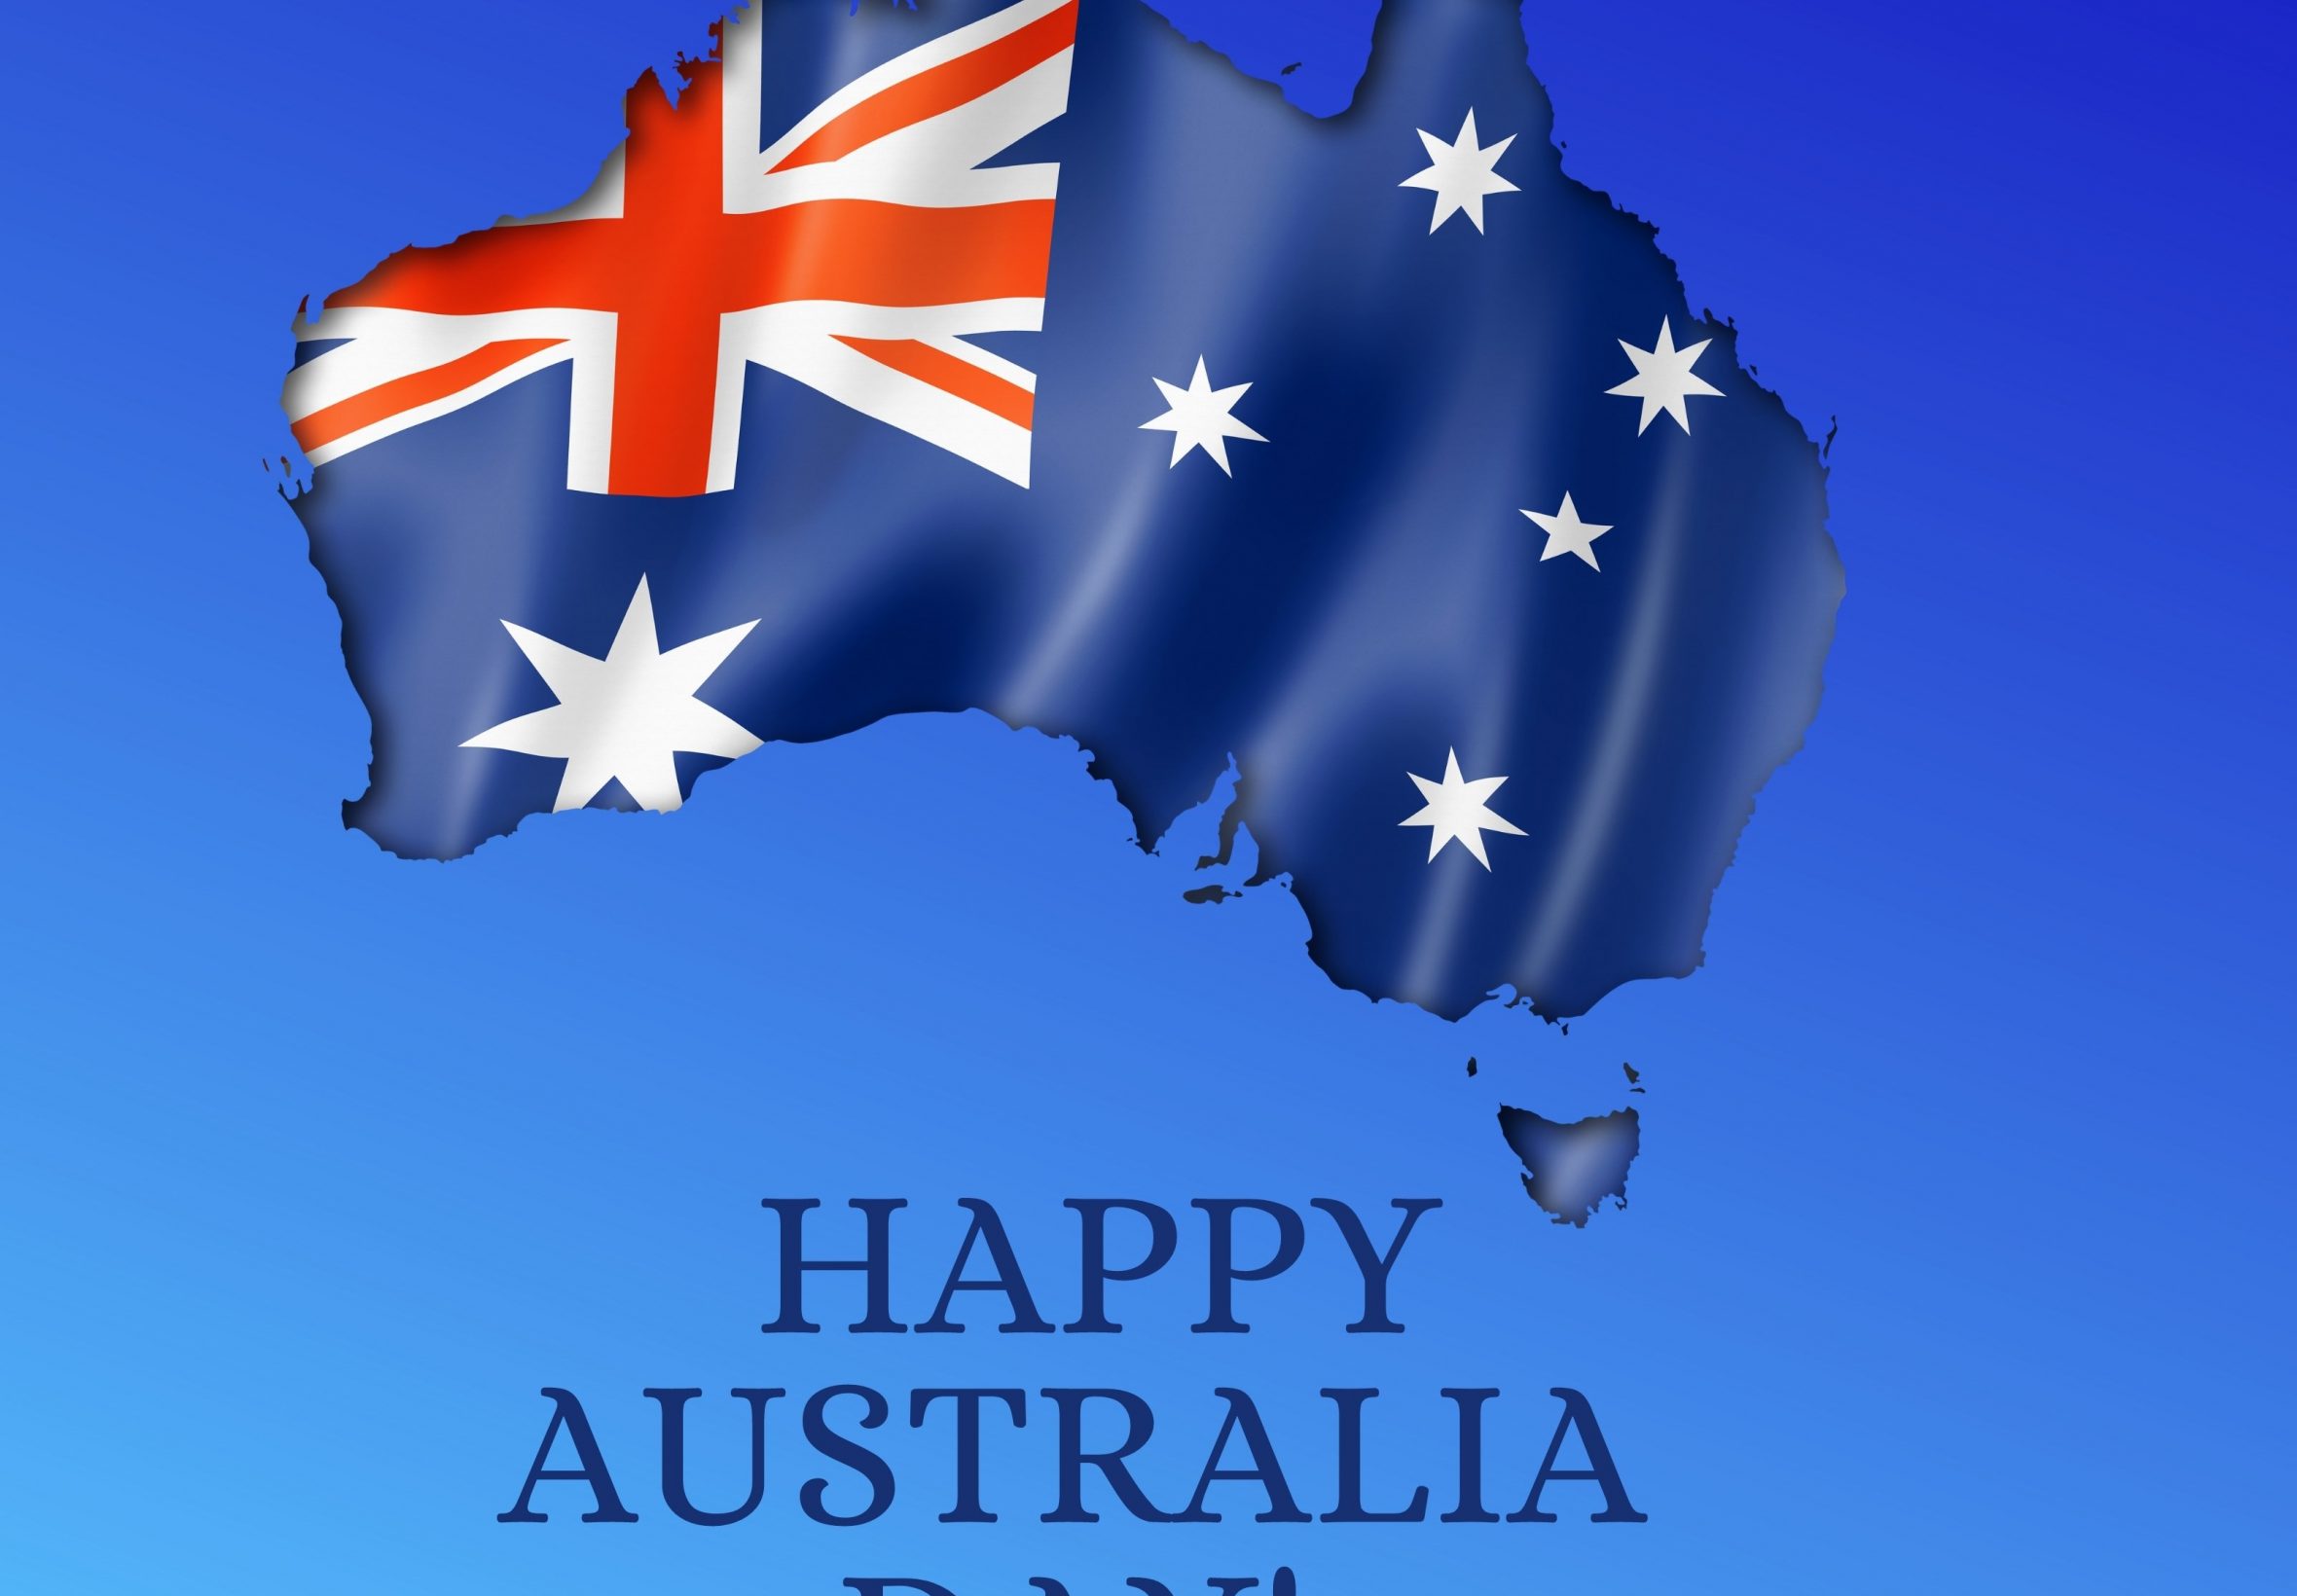 2360x1640 iPad Air wallpaper 4k Happy Australia Day iPad Wallpaper 2360x1640 pixels resolution